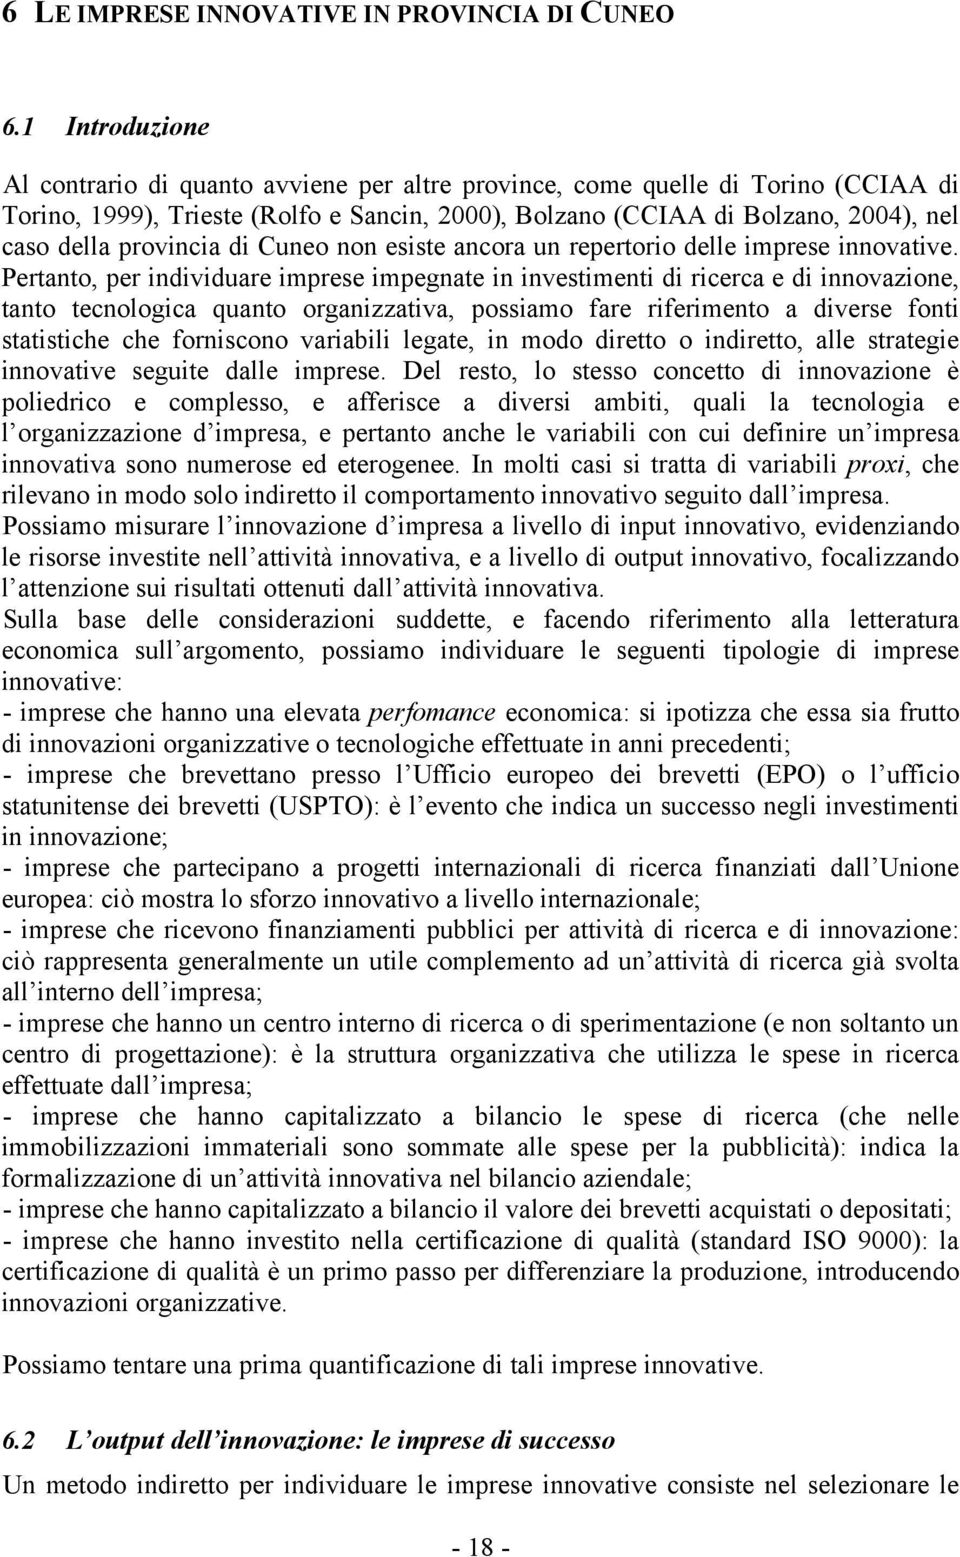 provincia di Cuneo non esiste ancora un repertorio delle imprese innovative.